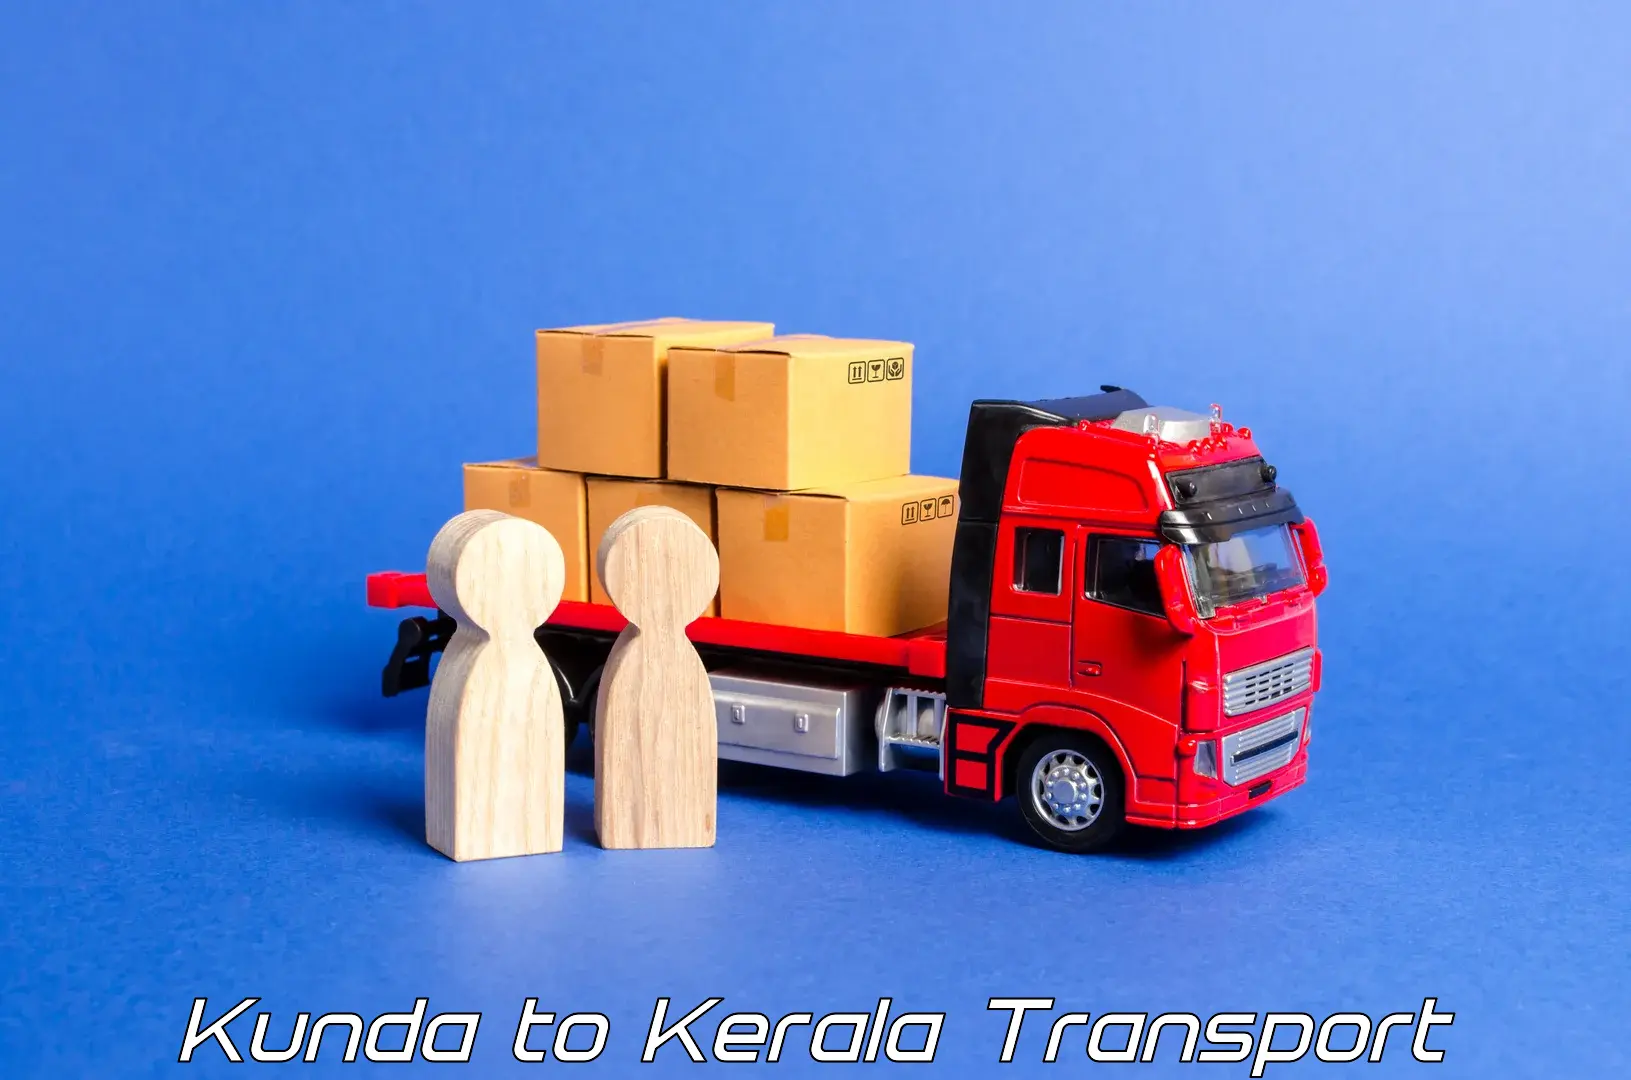 Daily transport service Kunda to Nallepilly